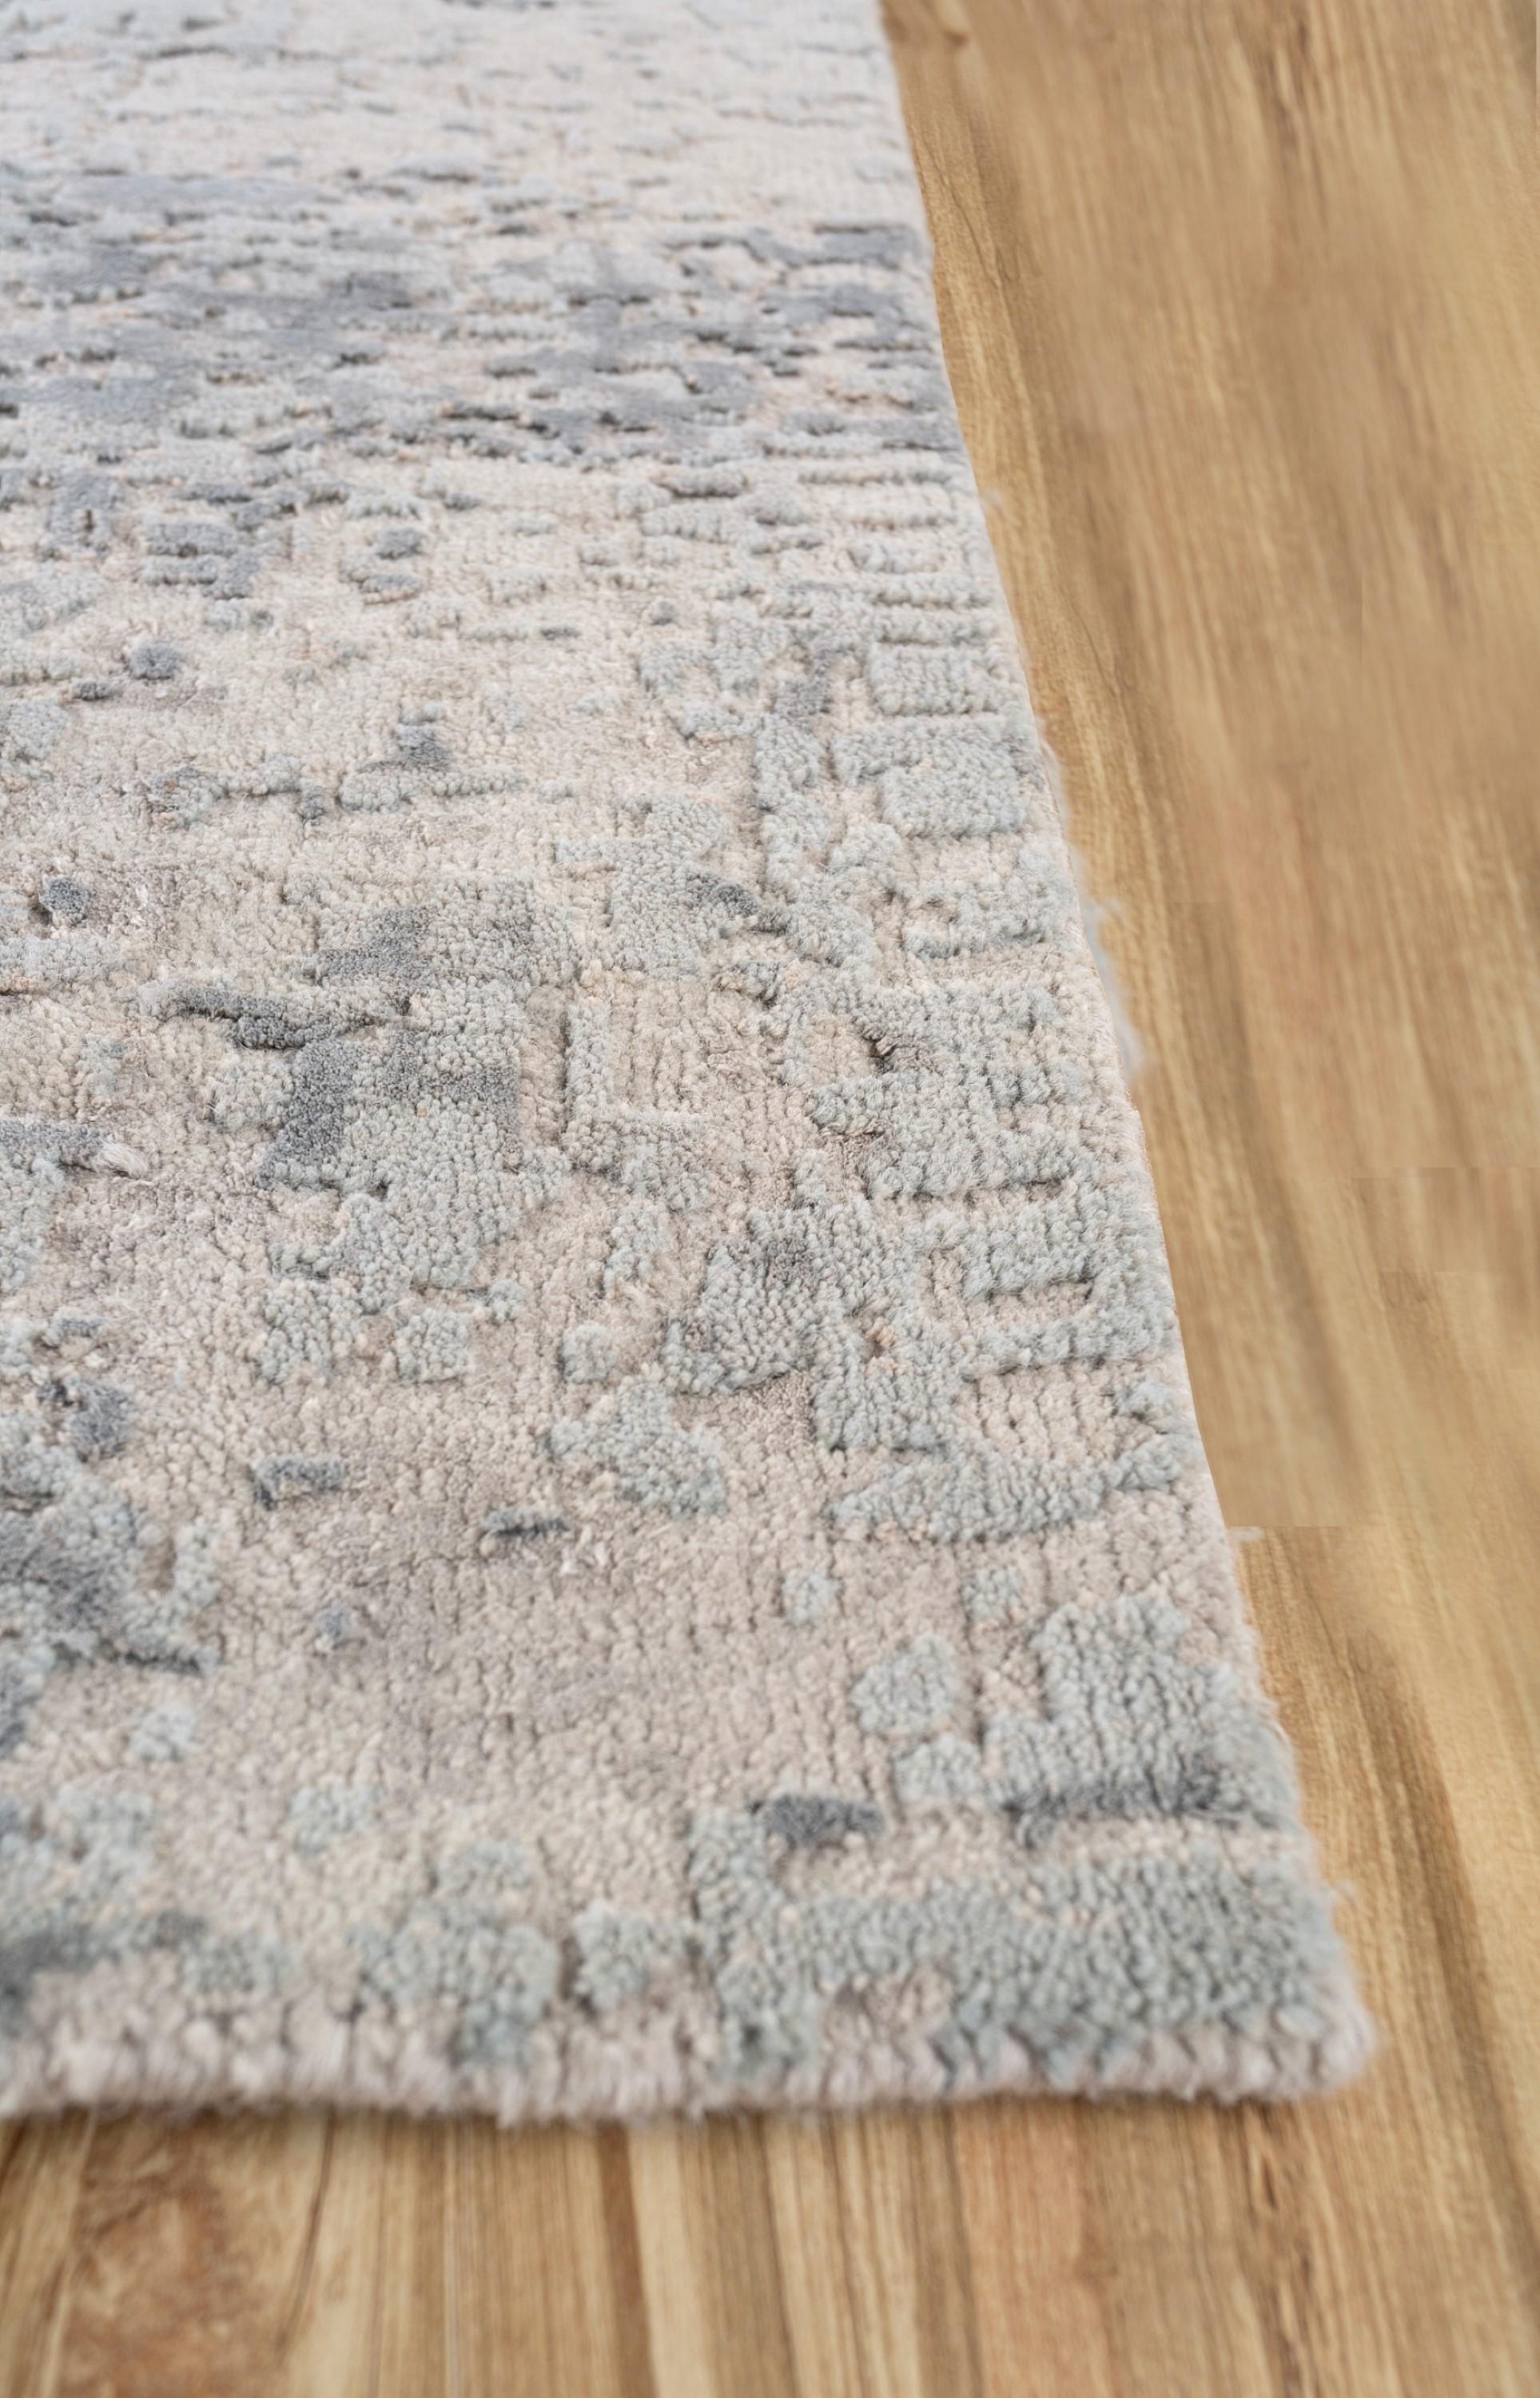 Lassen Sie sich von der Kunstfertigkeit unseres handgeknüpften Teppichs verzaubern, einer Verschmelzung von antikem Weiß und Pastellblau in einem modernen Design. Inspiriert von beobachteten Kerzenlichtmustern, erzählt dieser Teppich durch